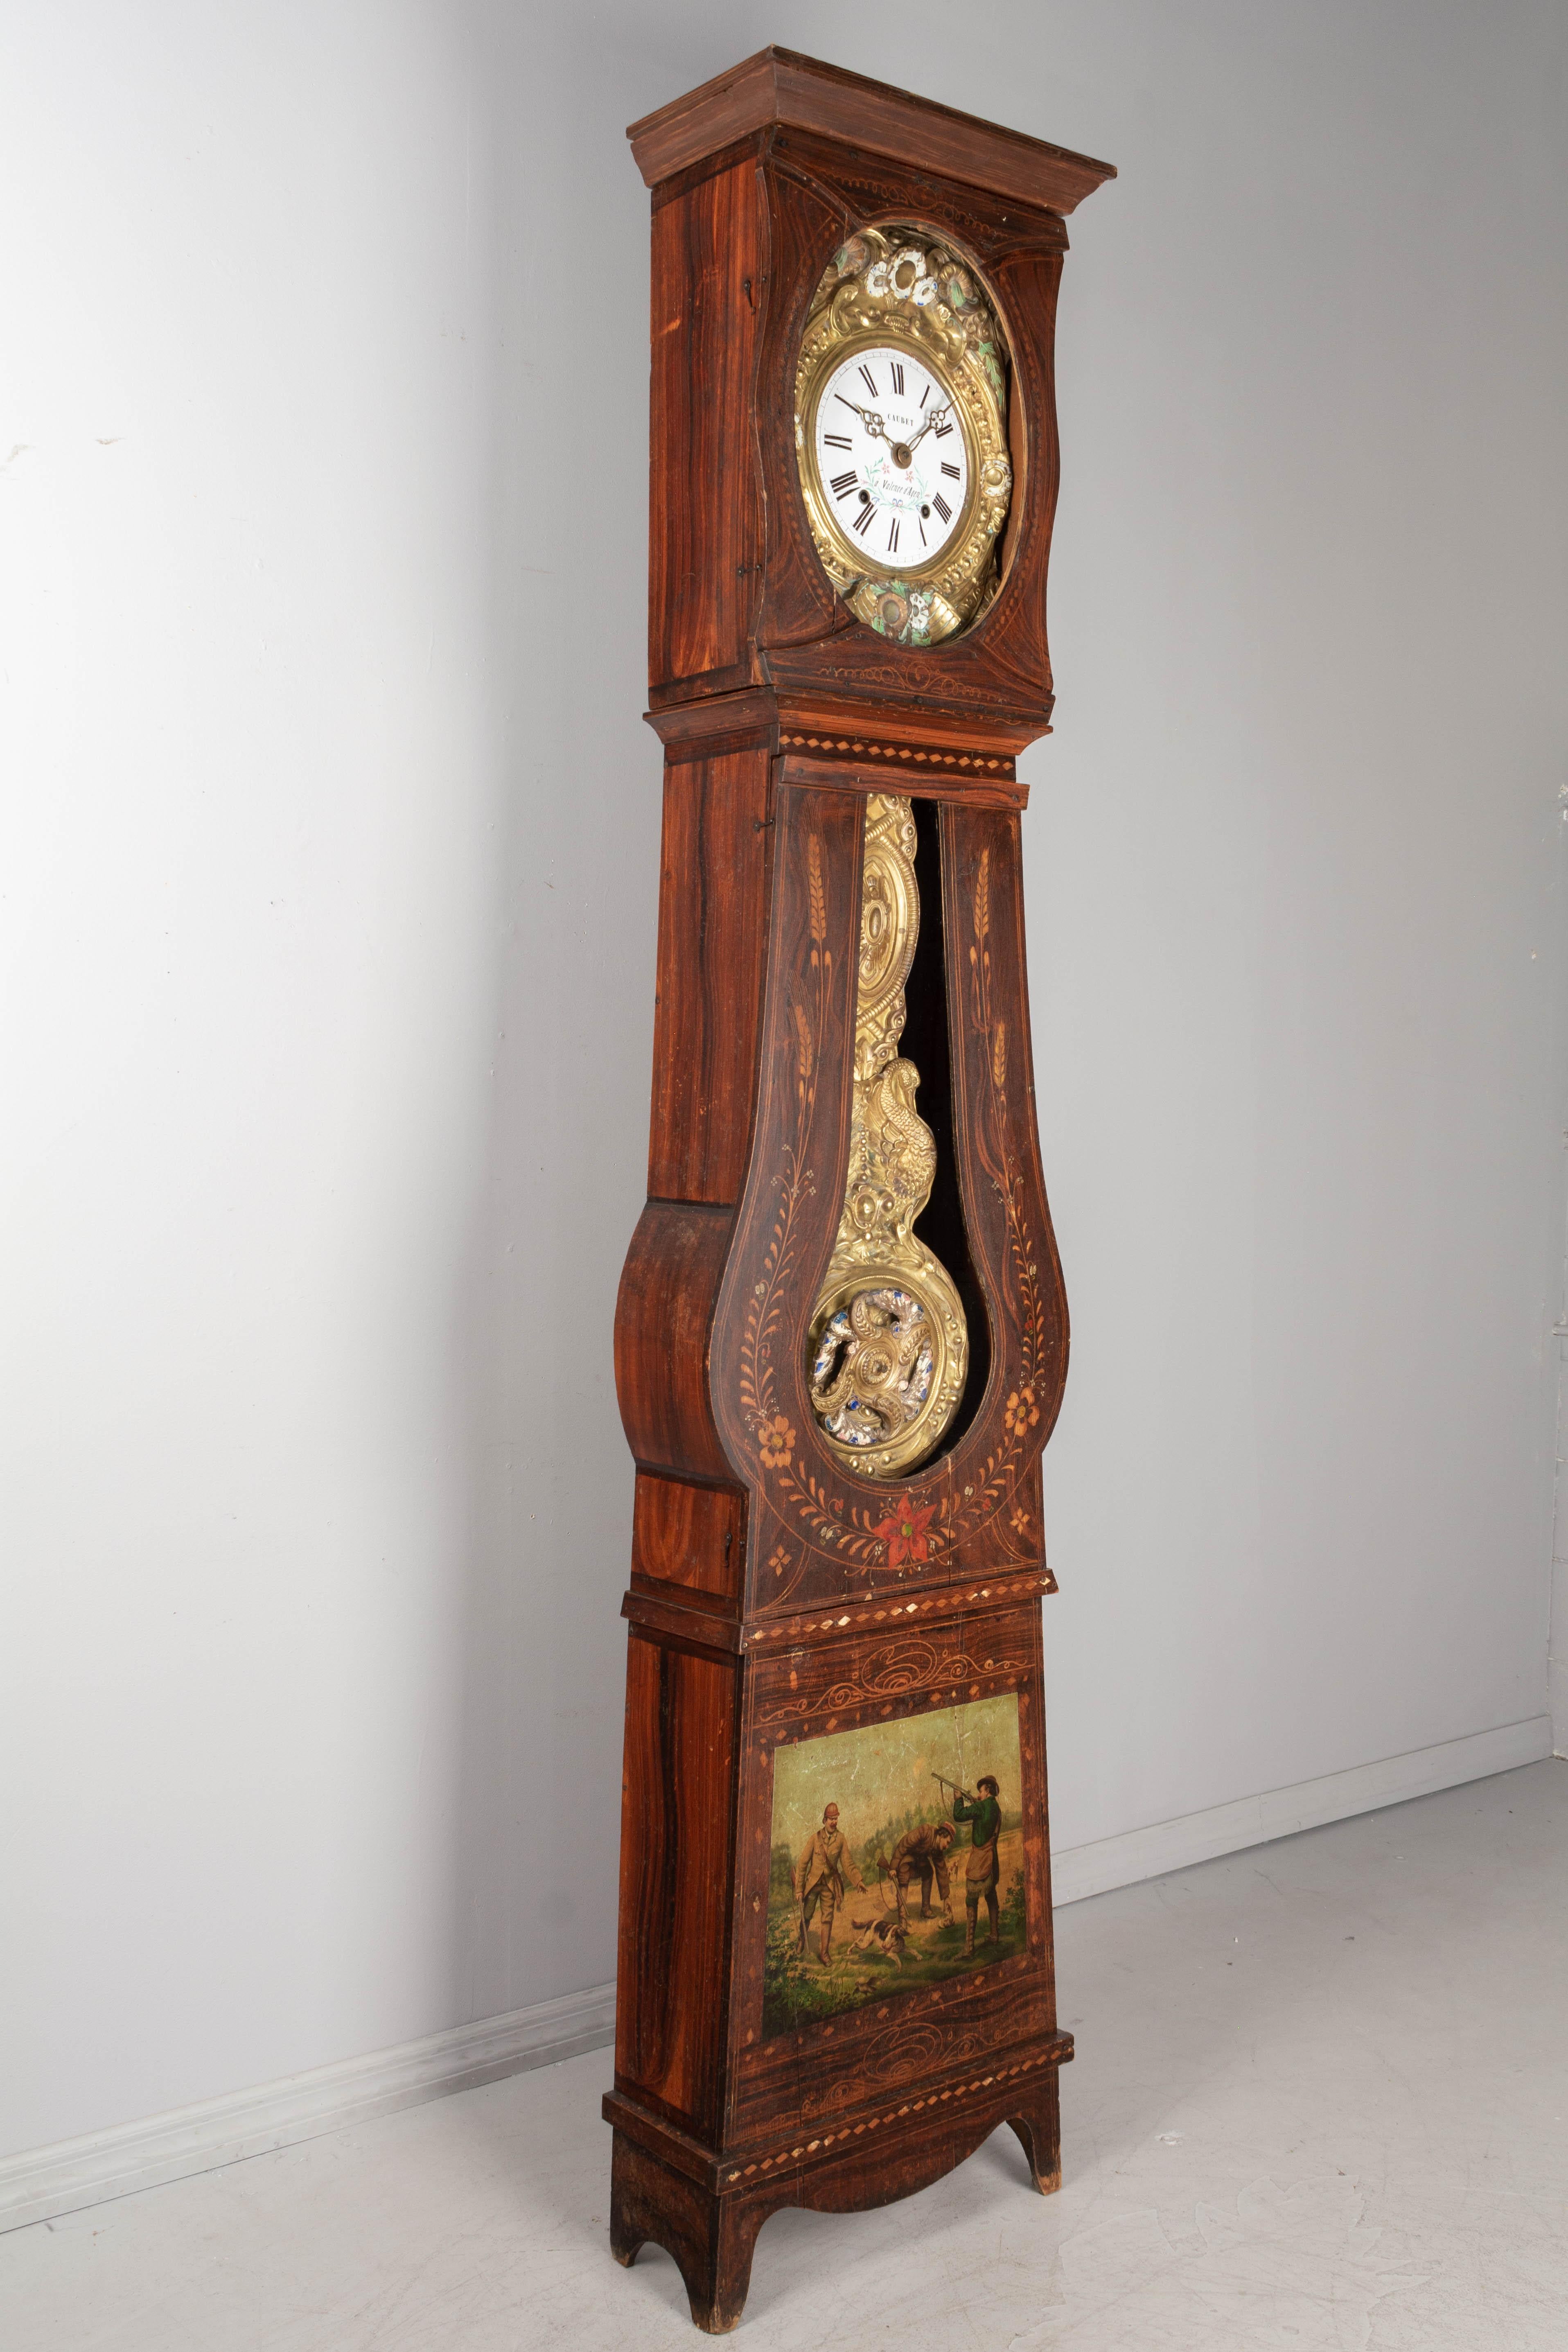 Une comtoise, ou horloge grand-père, de style français, avec un boîtier en pin peint en polychrome et un pendule en laiton gaufré. Mouvement Morbier d'origine à sept jours, nettoyé professionnellement et en état de marche, avec un cadran en émail